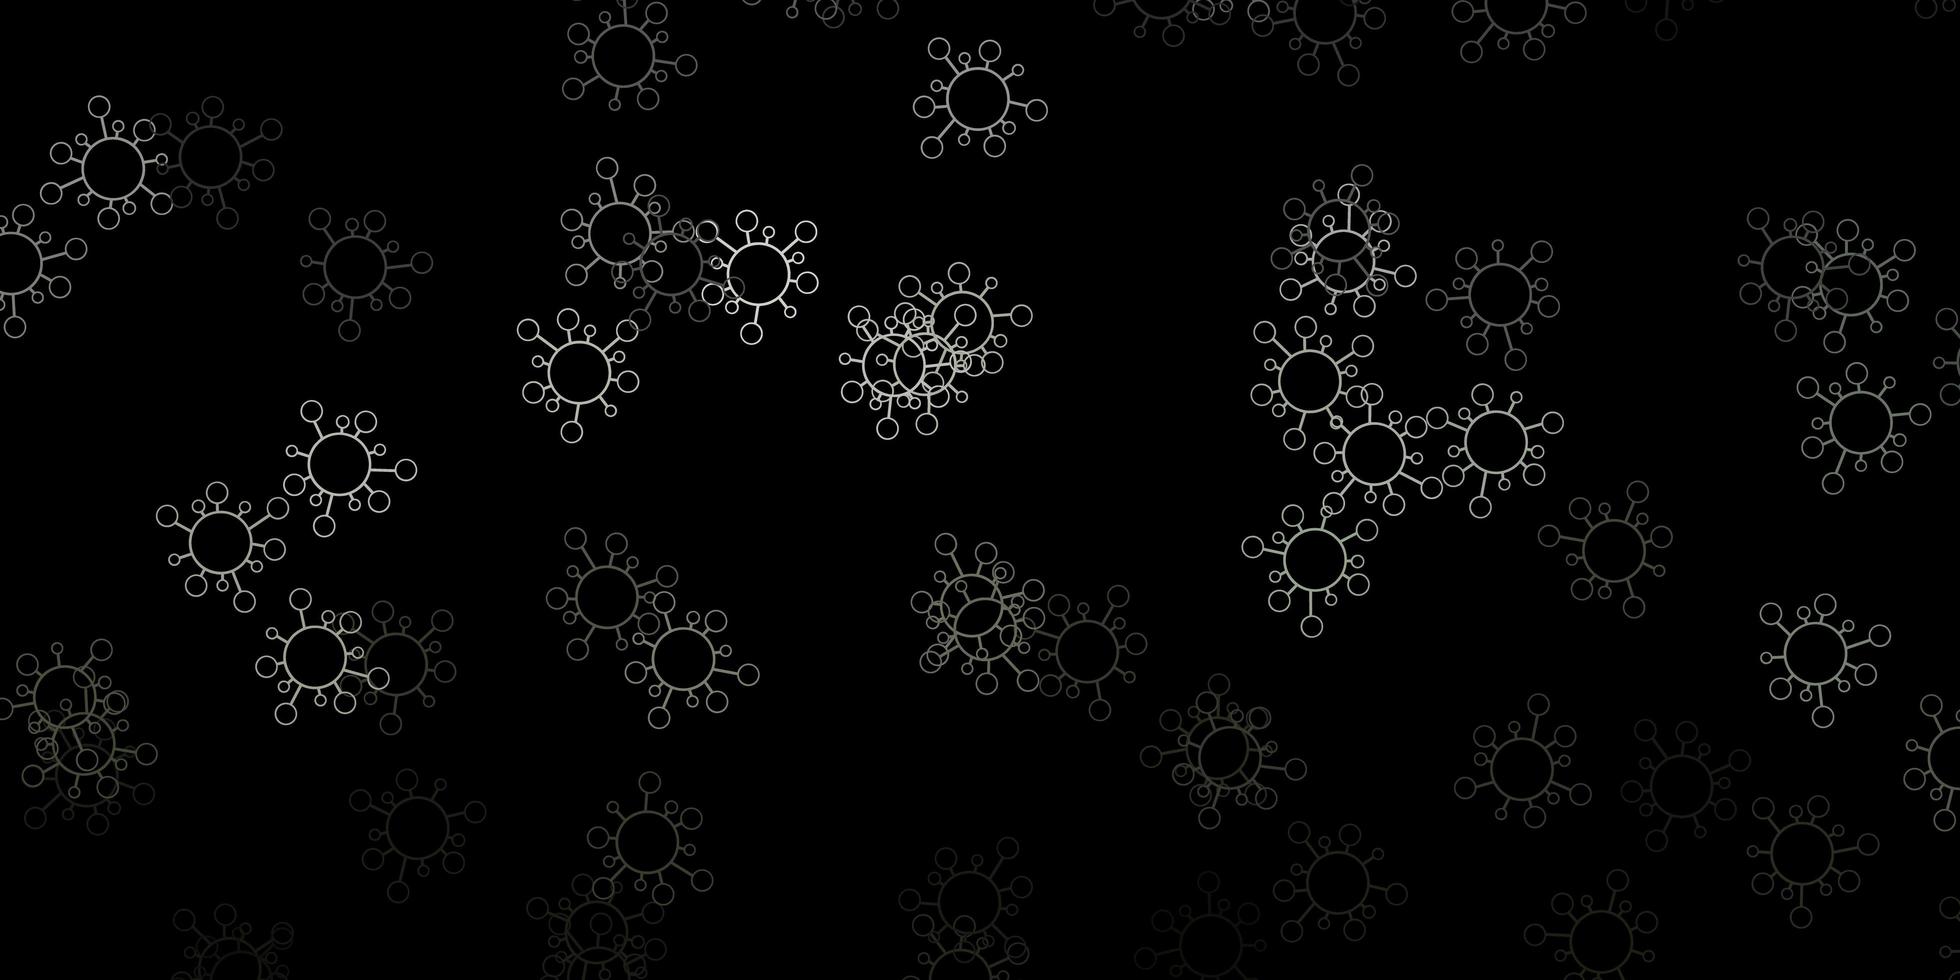 sfondo vettoriale grigio scuro con simboli di virus.